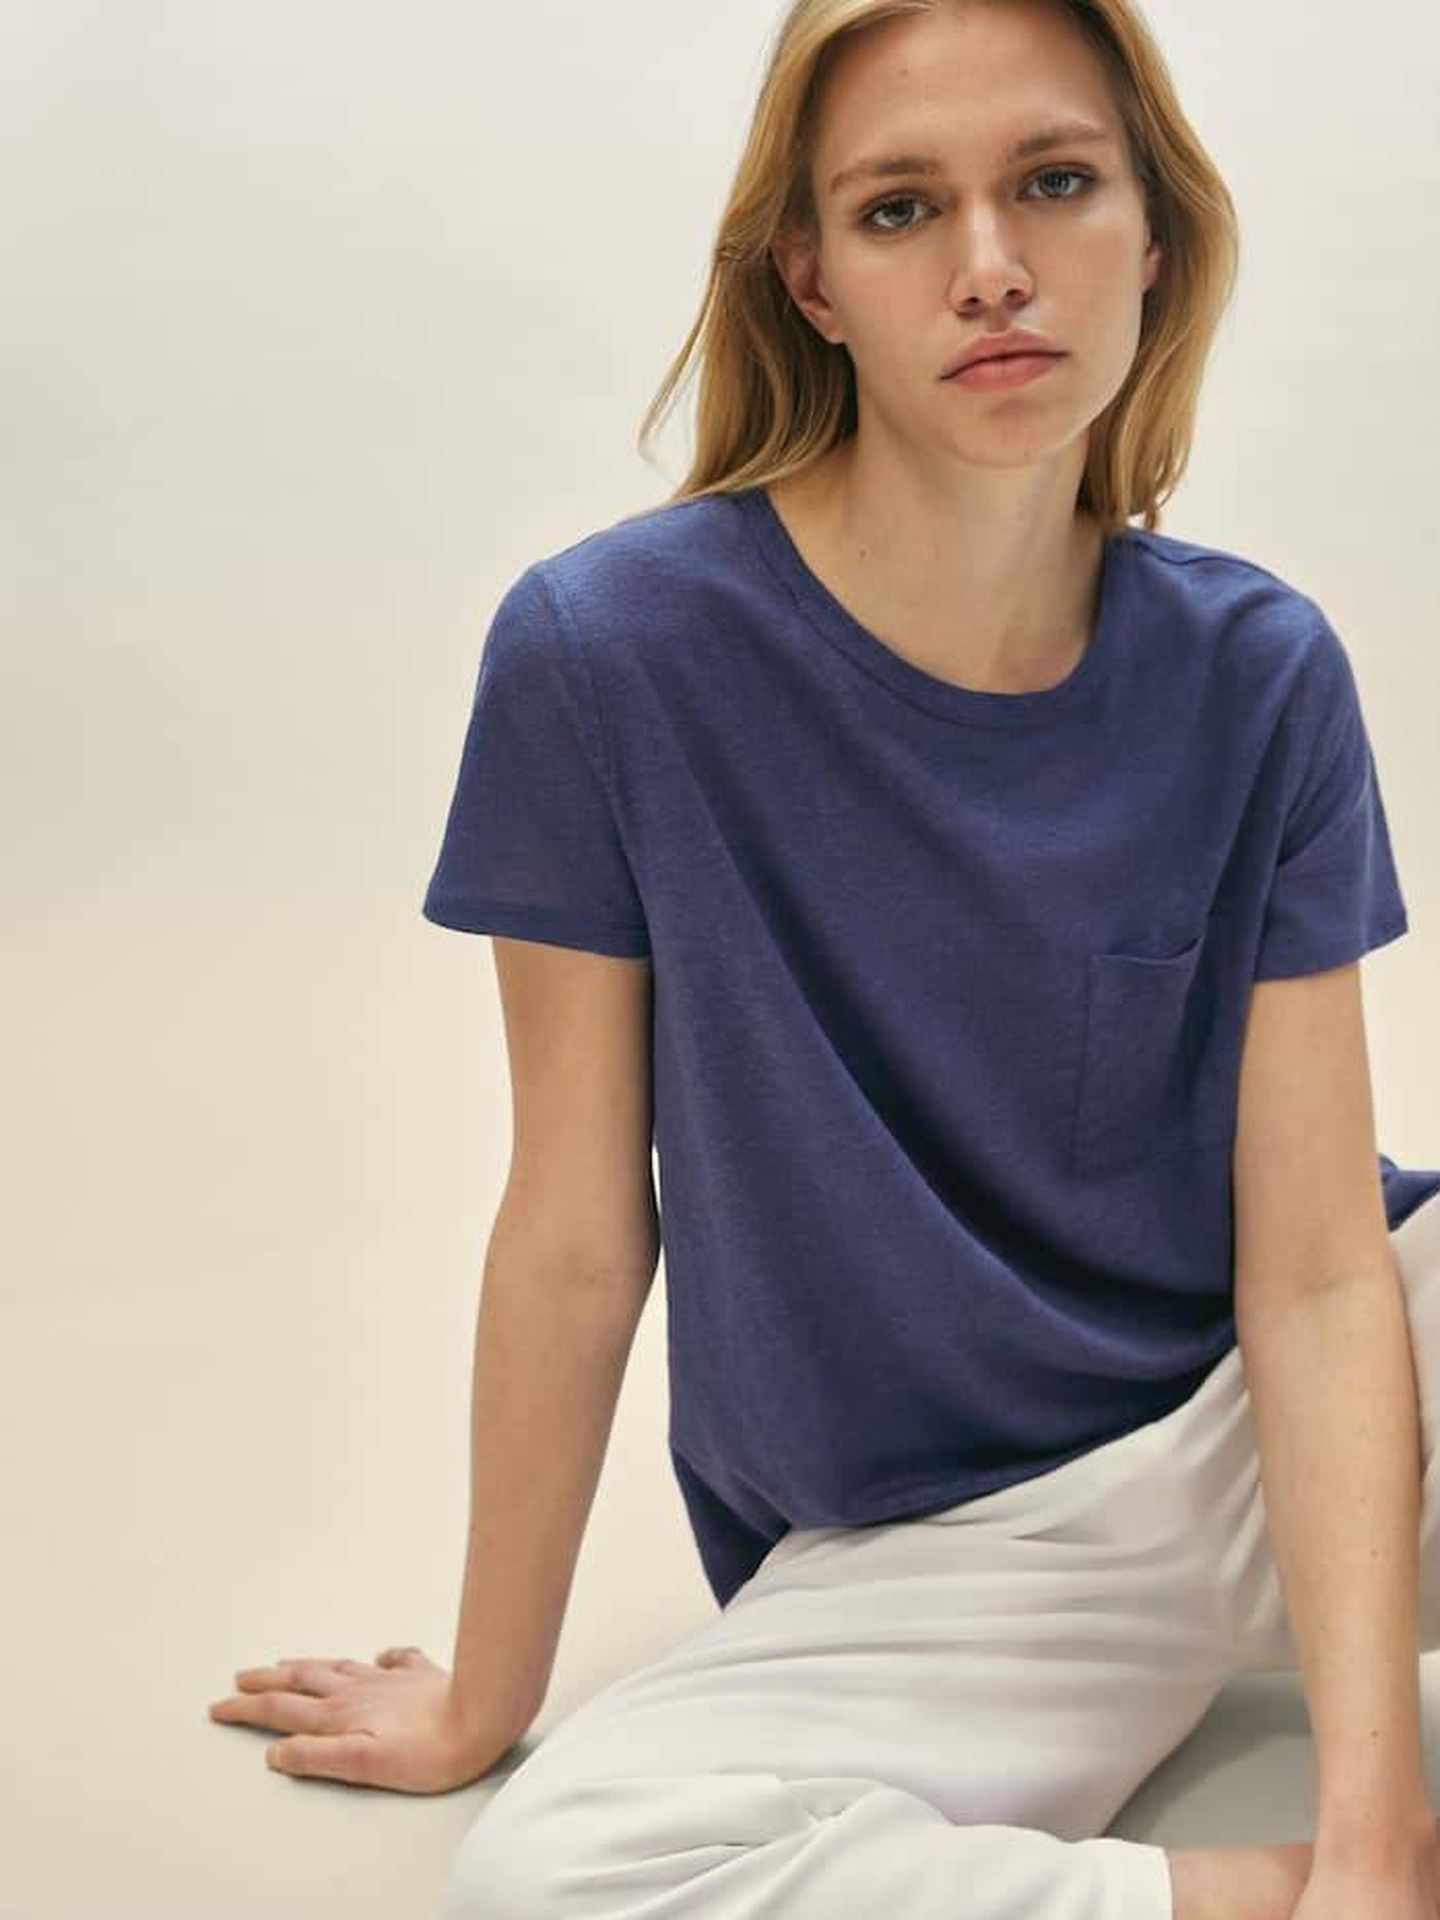 Camiseta de lino de Massimo Dutti. (Cortesía)